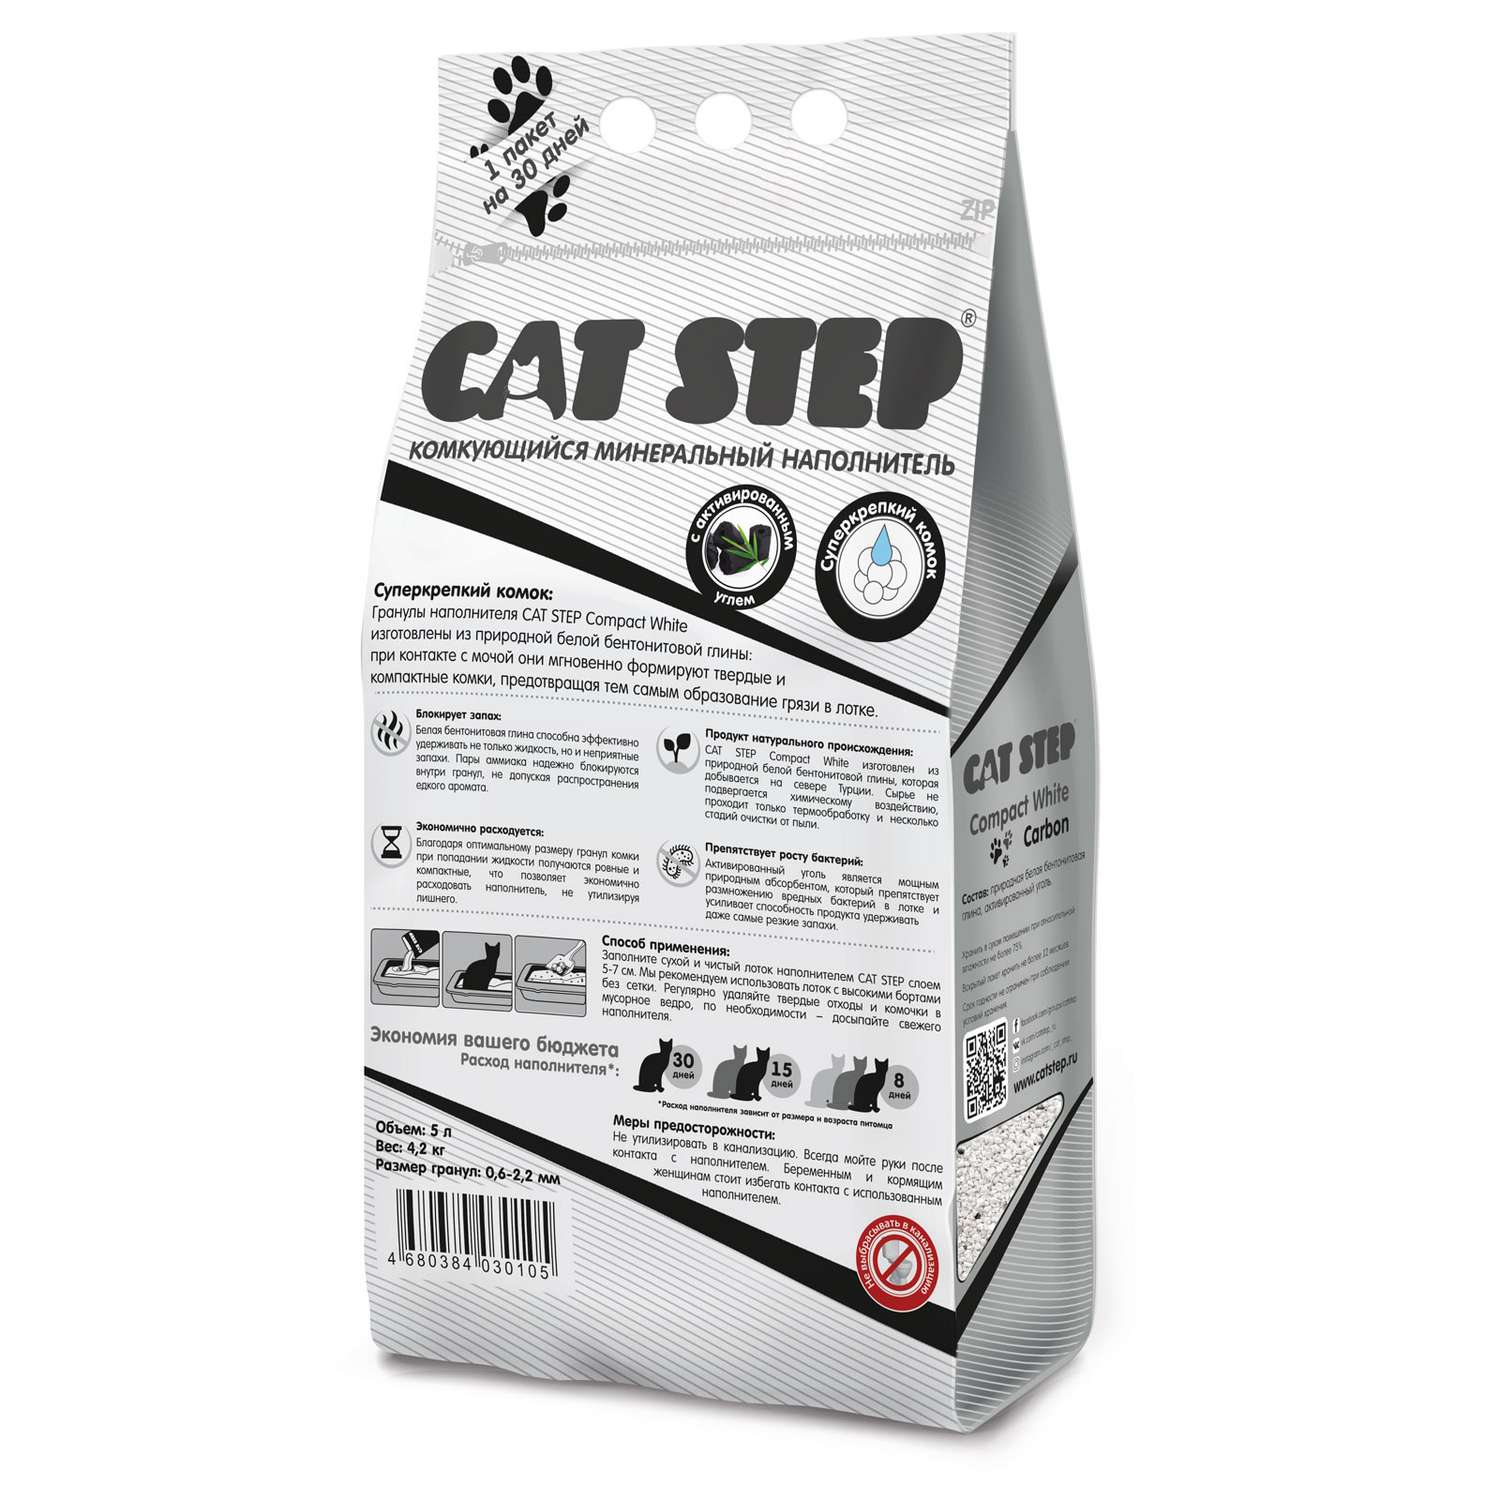 Наполнитель для кошачьего туалета Cat Step Compact White Carbon комкующийся минеральный 5л - фото 2